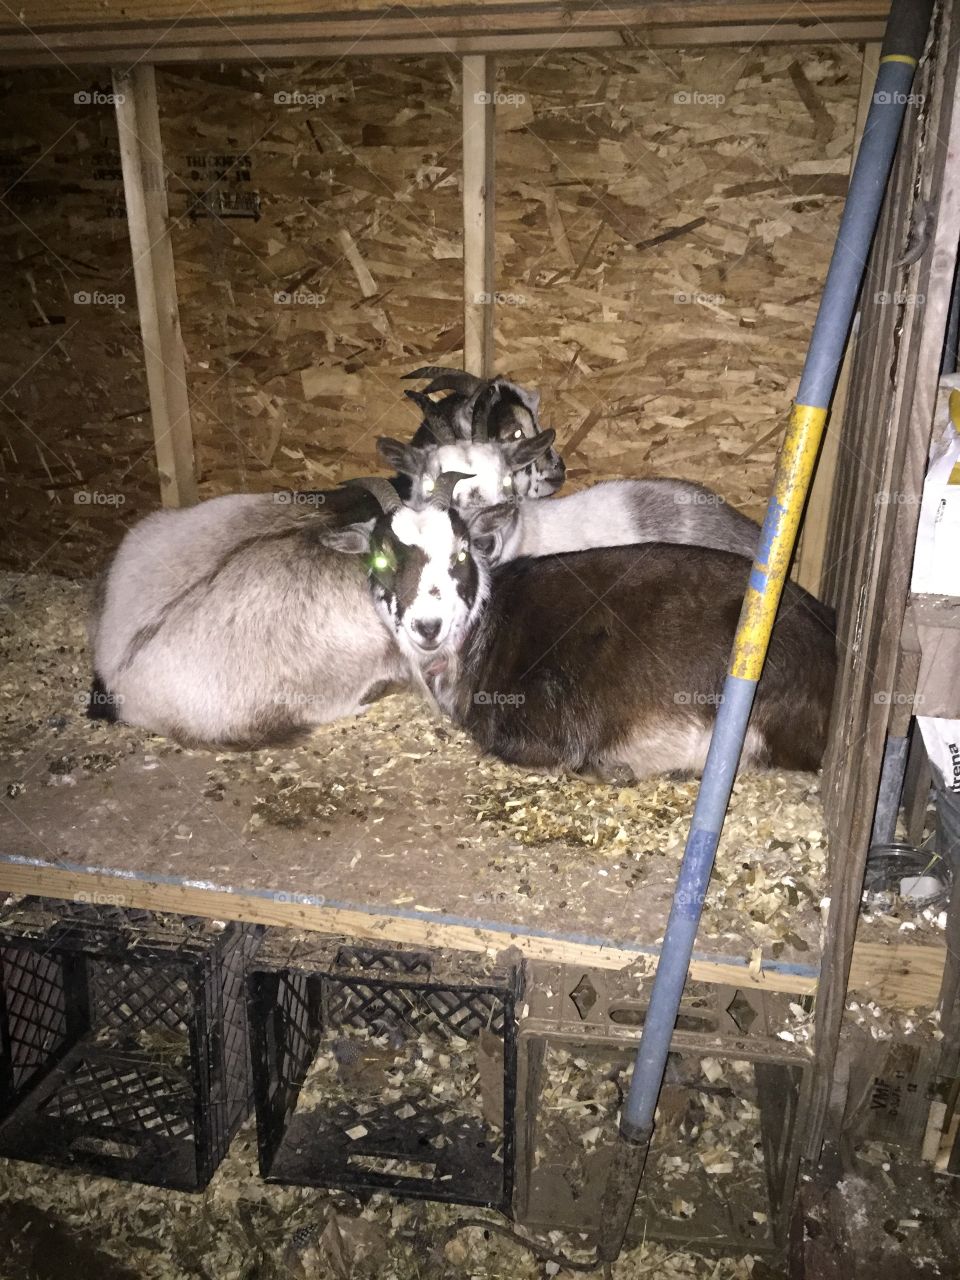 Snuggling goats 